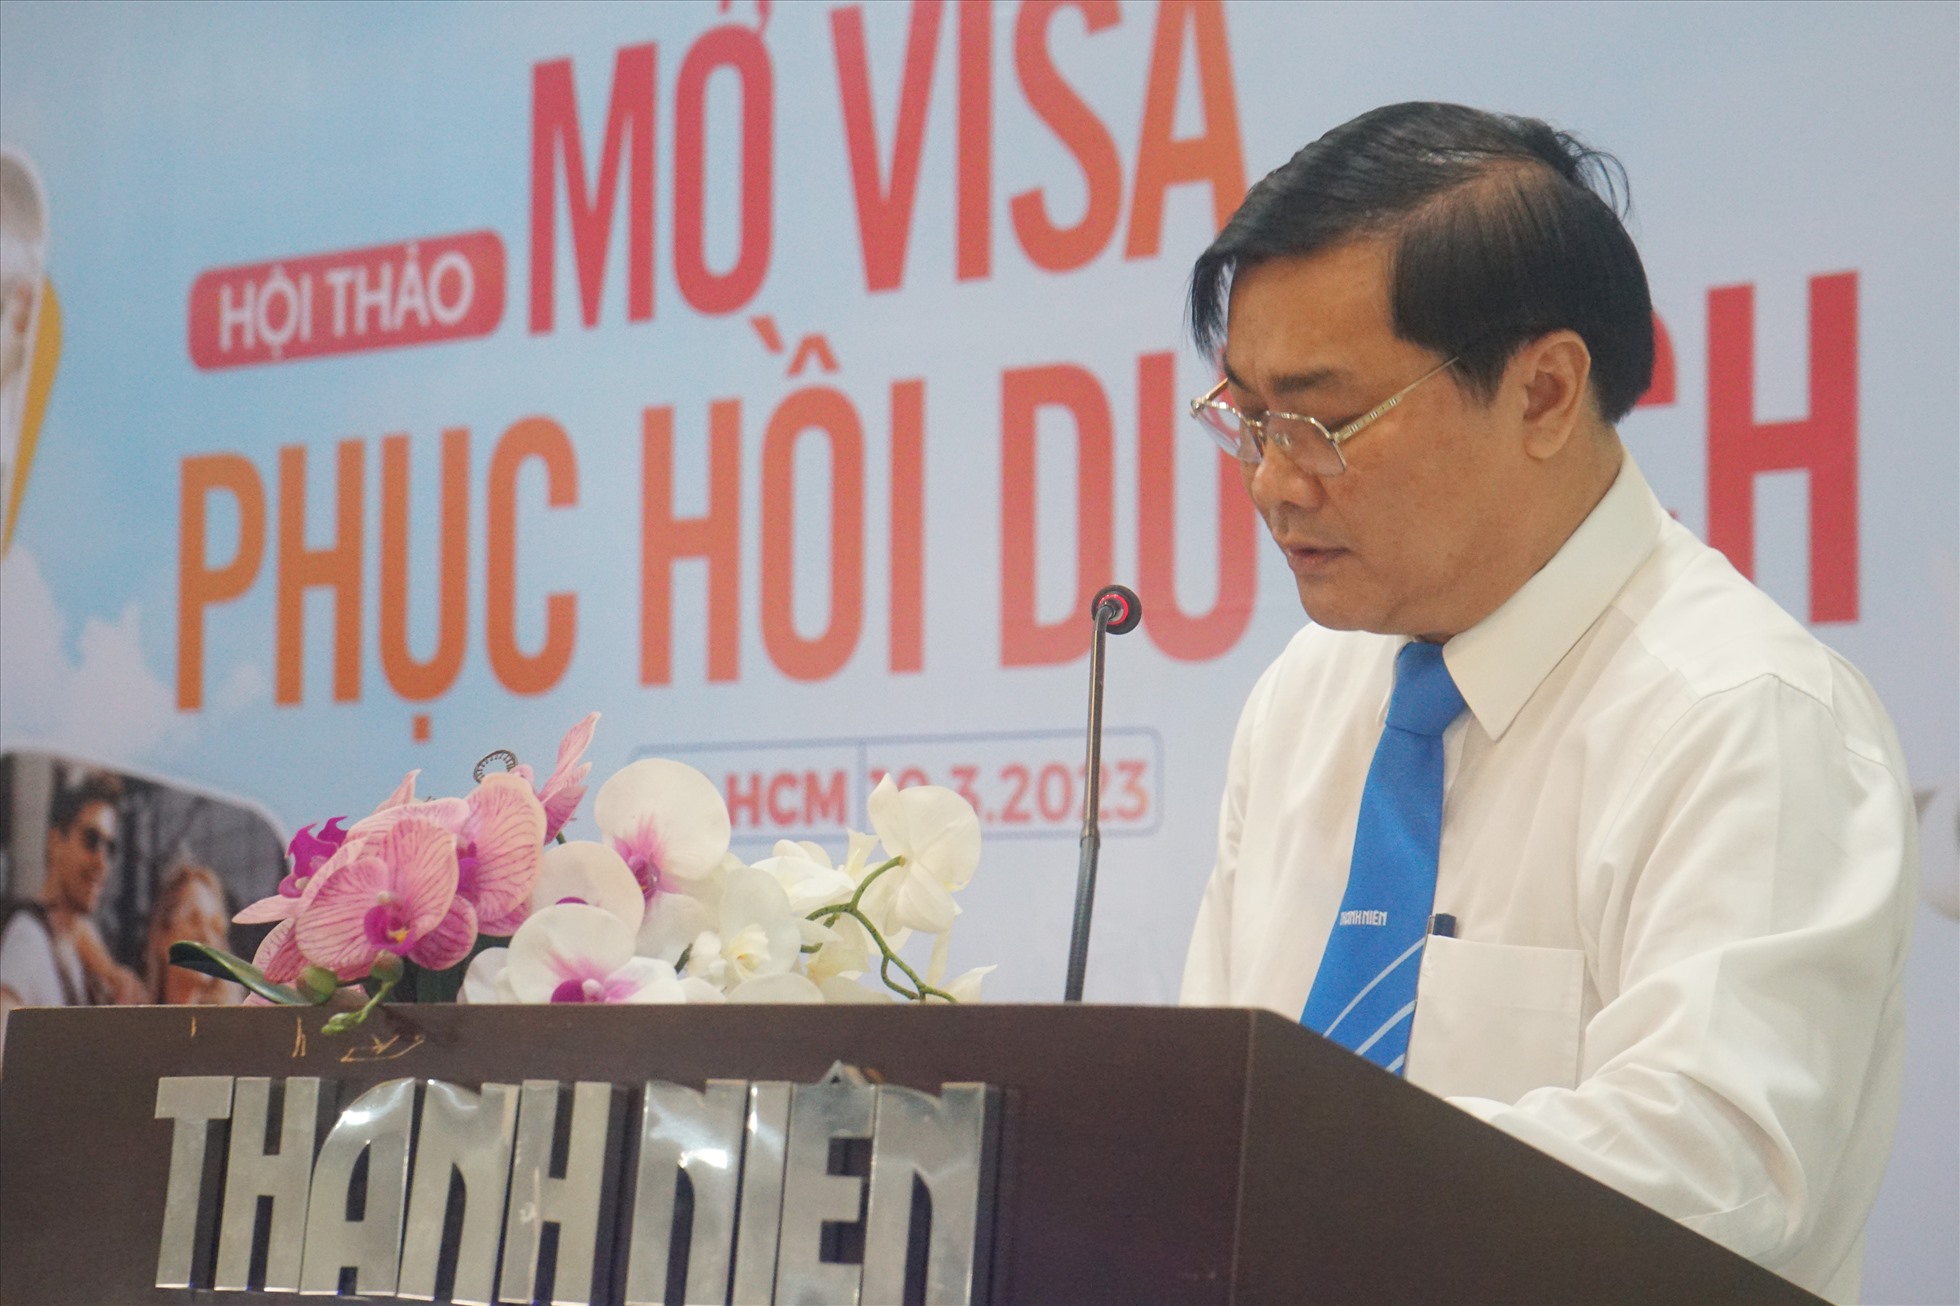 Tổng biên tập Báo Thanh Niên Nguyễn Ngọc Toàn phát biểu tại Hội thảo “Mở visa, phục hồi du lịch” do Báo Thanh Niên tổ chức ngày 10.3. Ảnh: Thanh Chân